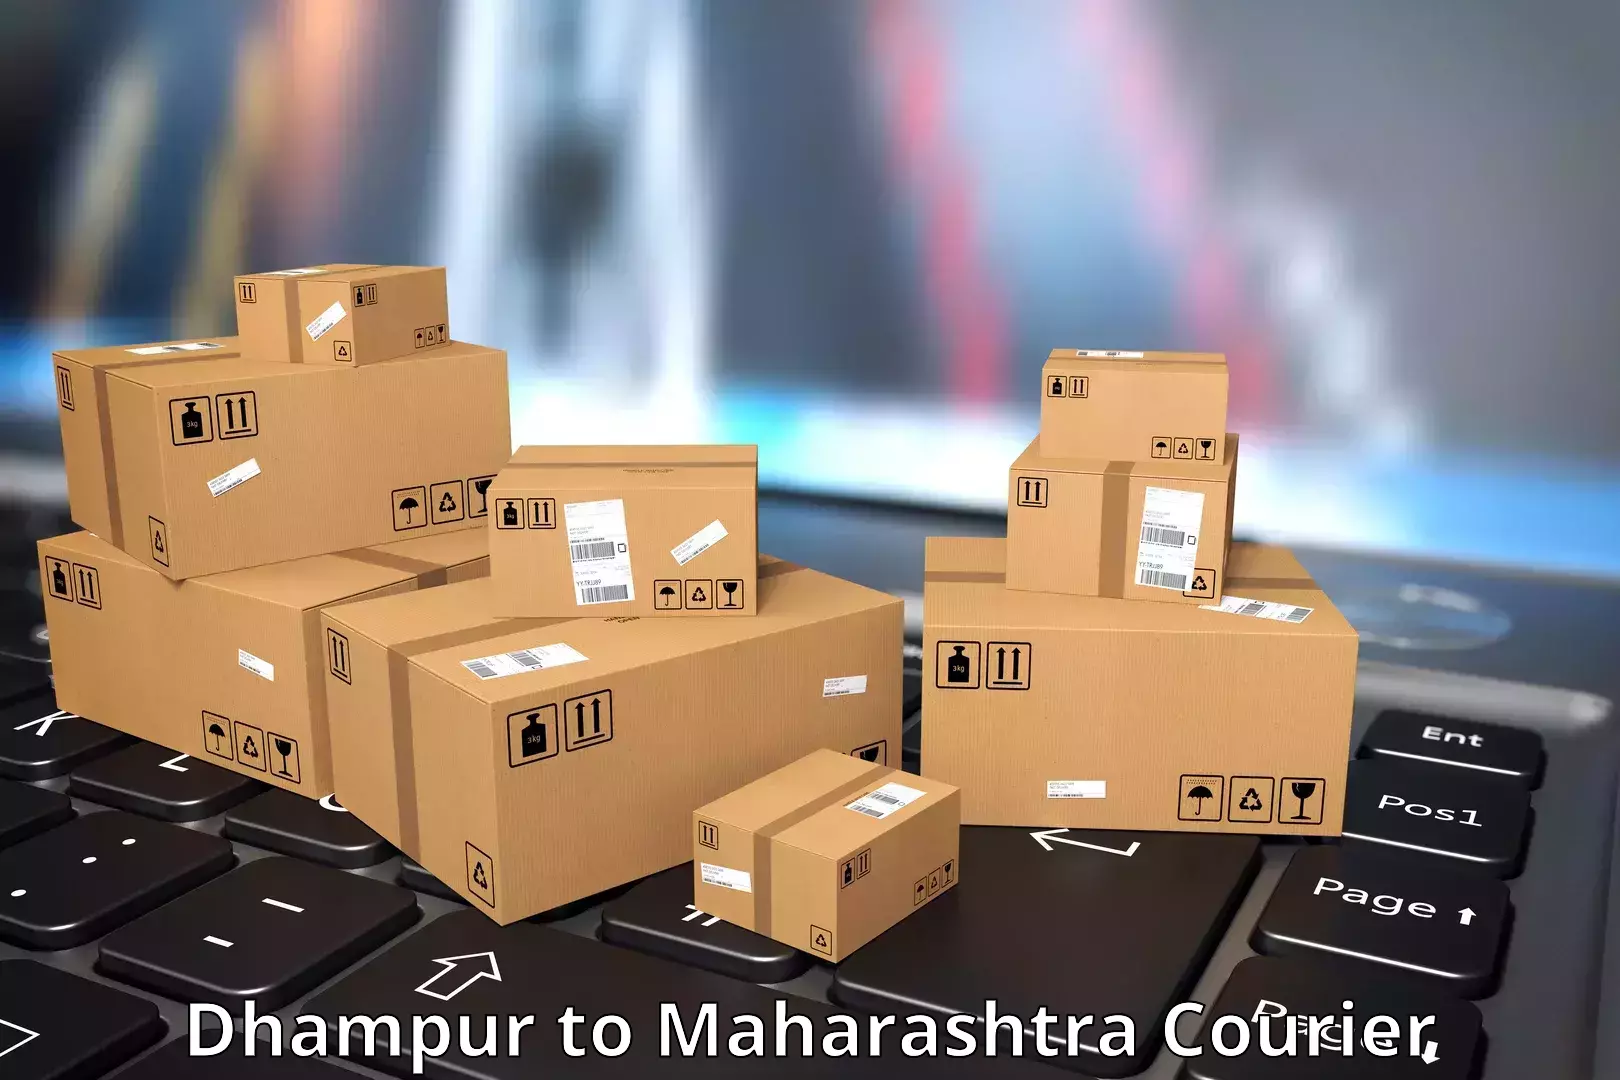 Courier service comparison Dhampur to Khopoli